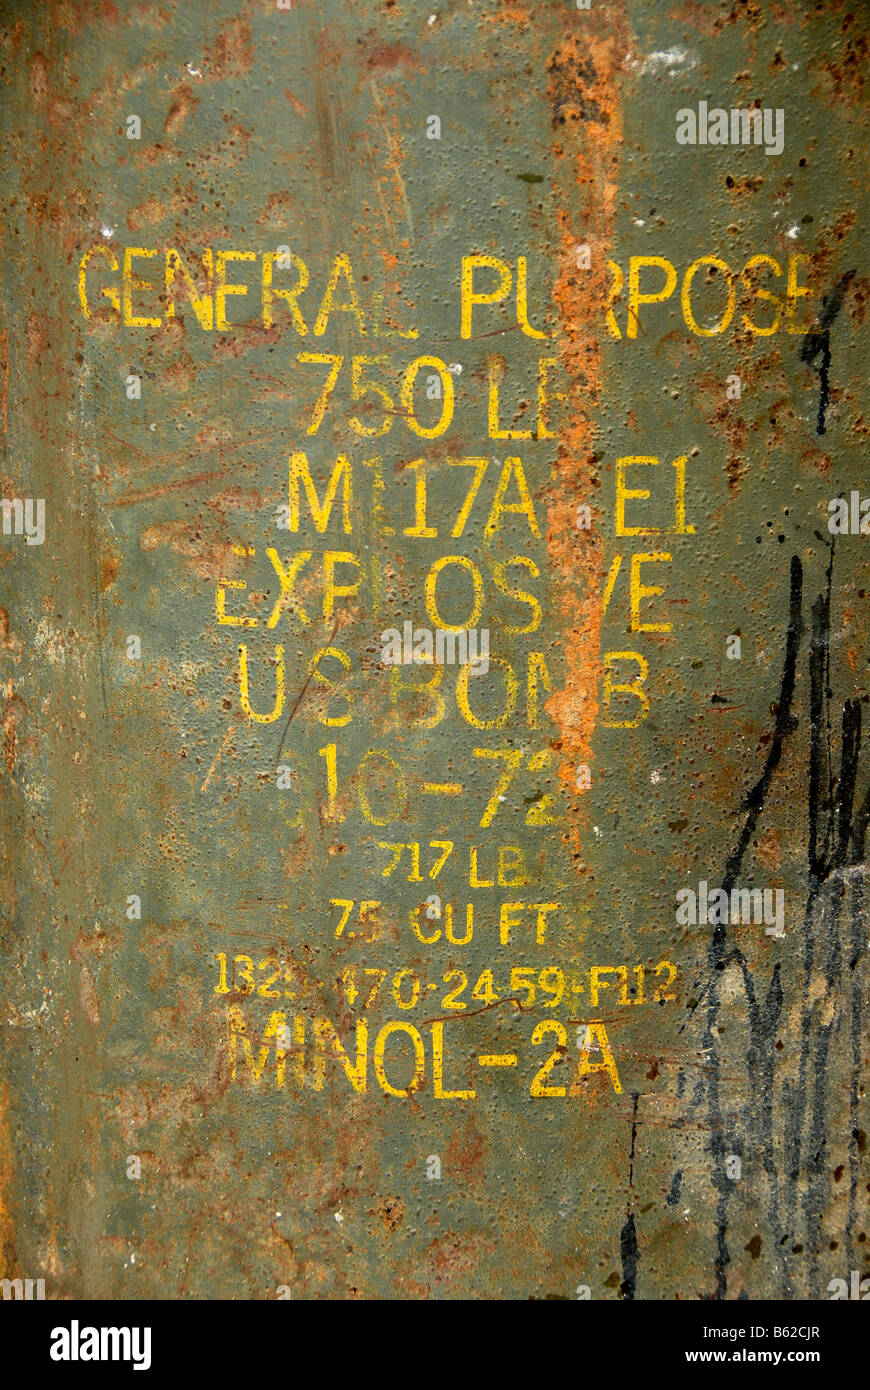 Schreiben, General Purpose 750LB Explosive uns Bombe, auf ein Blindgänger der USA aus dem Vietnamkrieg 1972, Phonsavan, Xieng Khuan Stockfoto